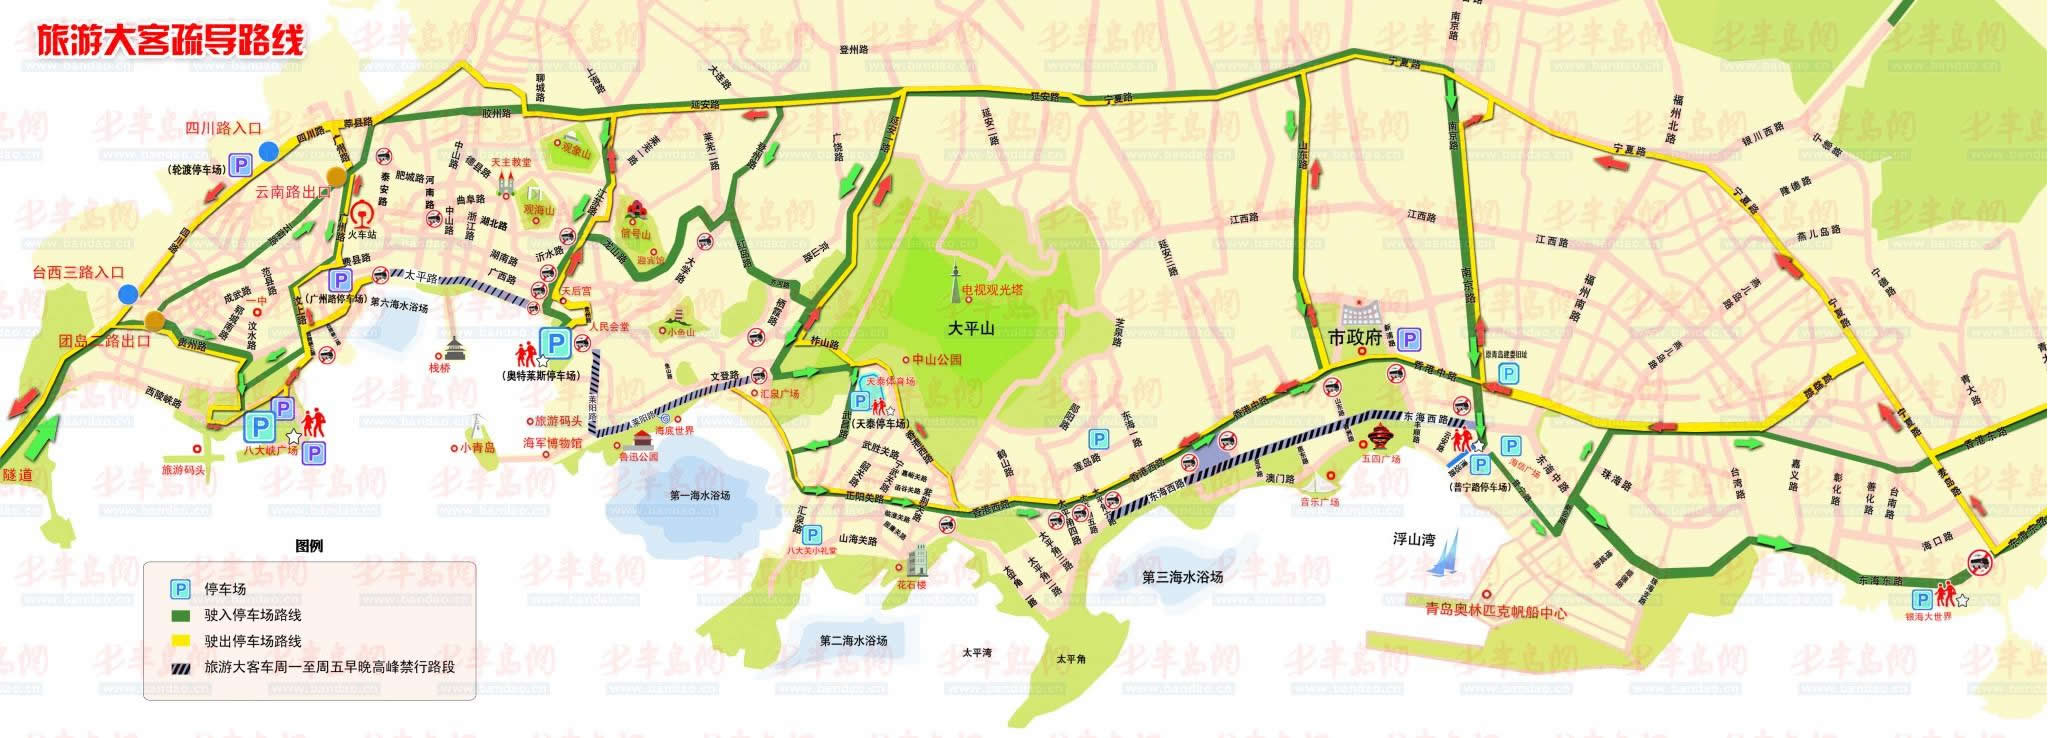 五一起青岛将实行弹性交通管制 涉前海三大路段